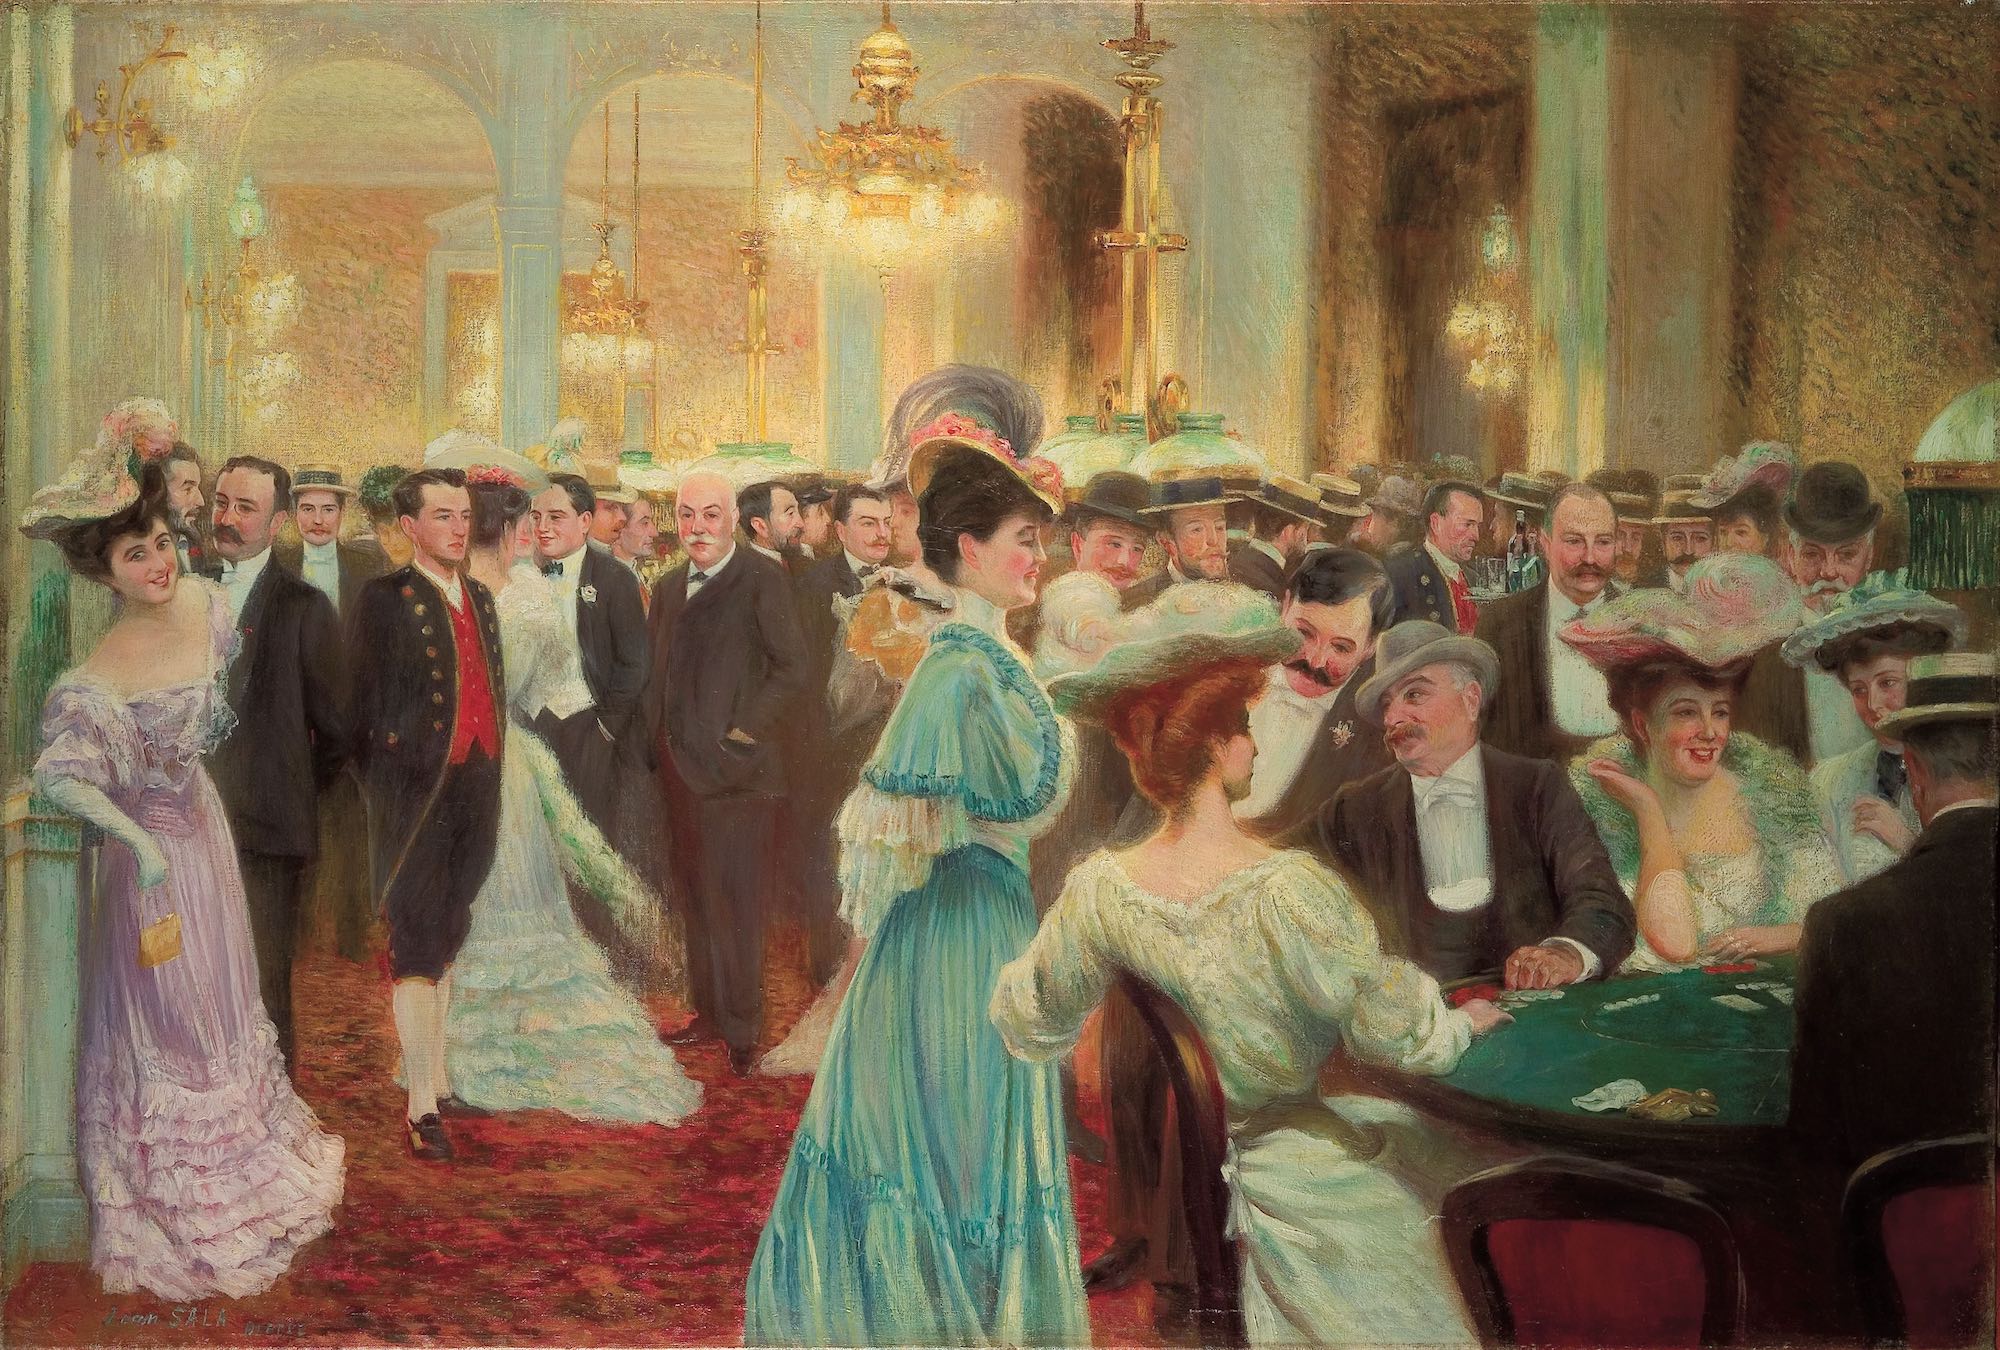 Jean Sala (1869-1918), Casino à Dieppe. Huile sur toile, 57 x 83 cm. Collection particulière. Photo service de presse. © Jean-Paul Morin